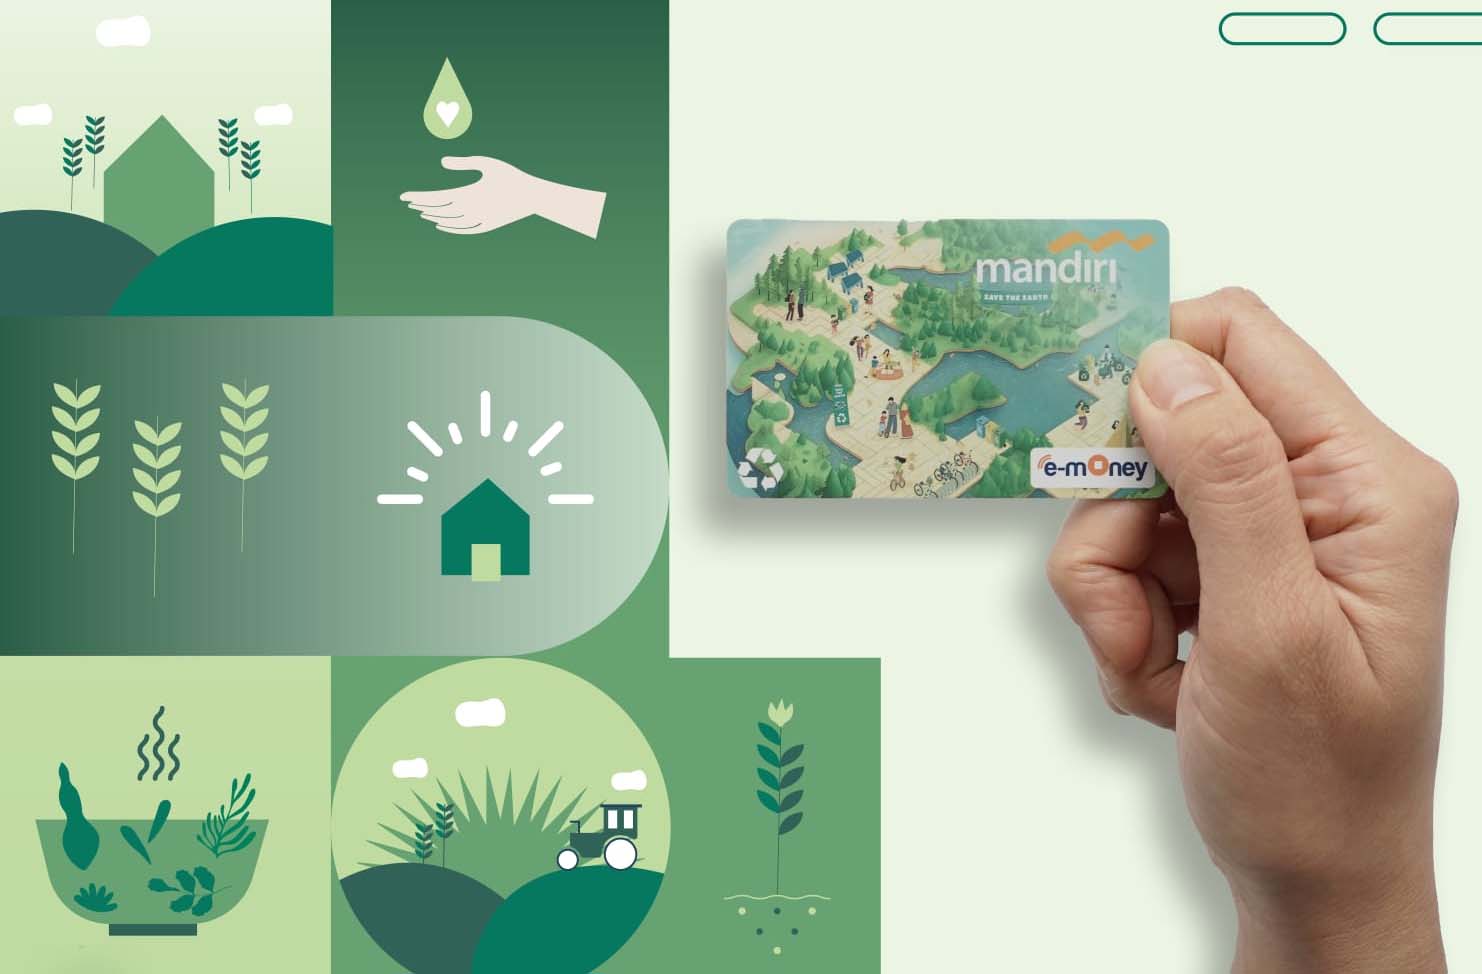 Redam Jejak Karbon, Bank Mandiri Terbitkan Kartu Debit dan E-money Plastik Daur Ulang Pertama di Indonesia